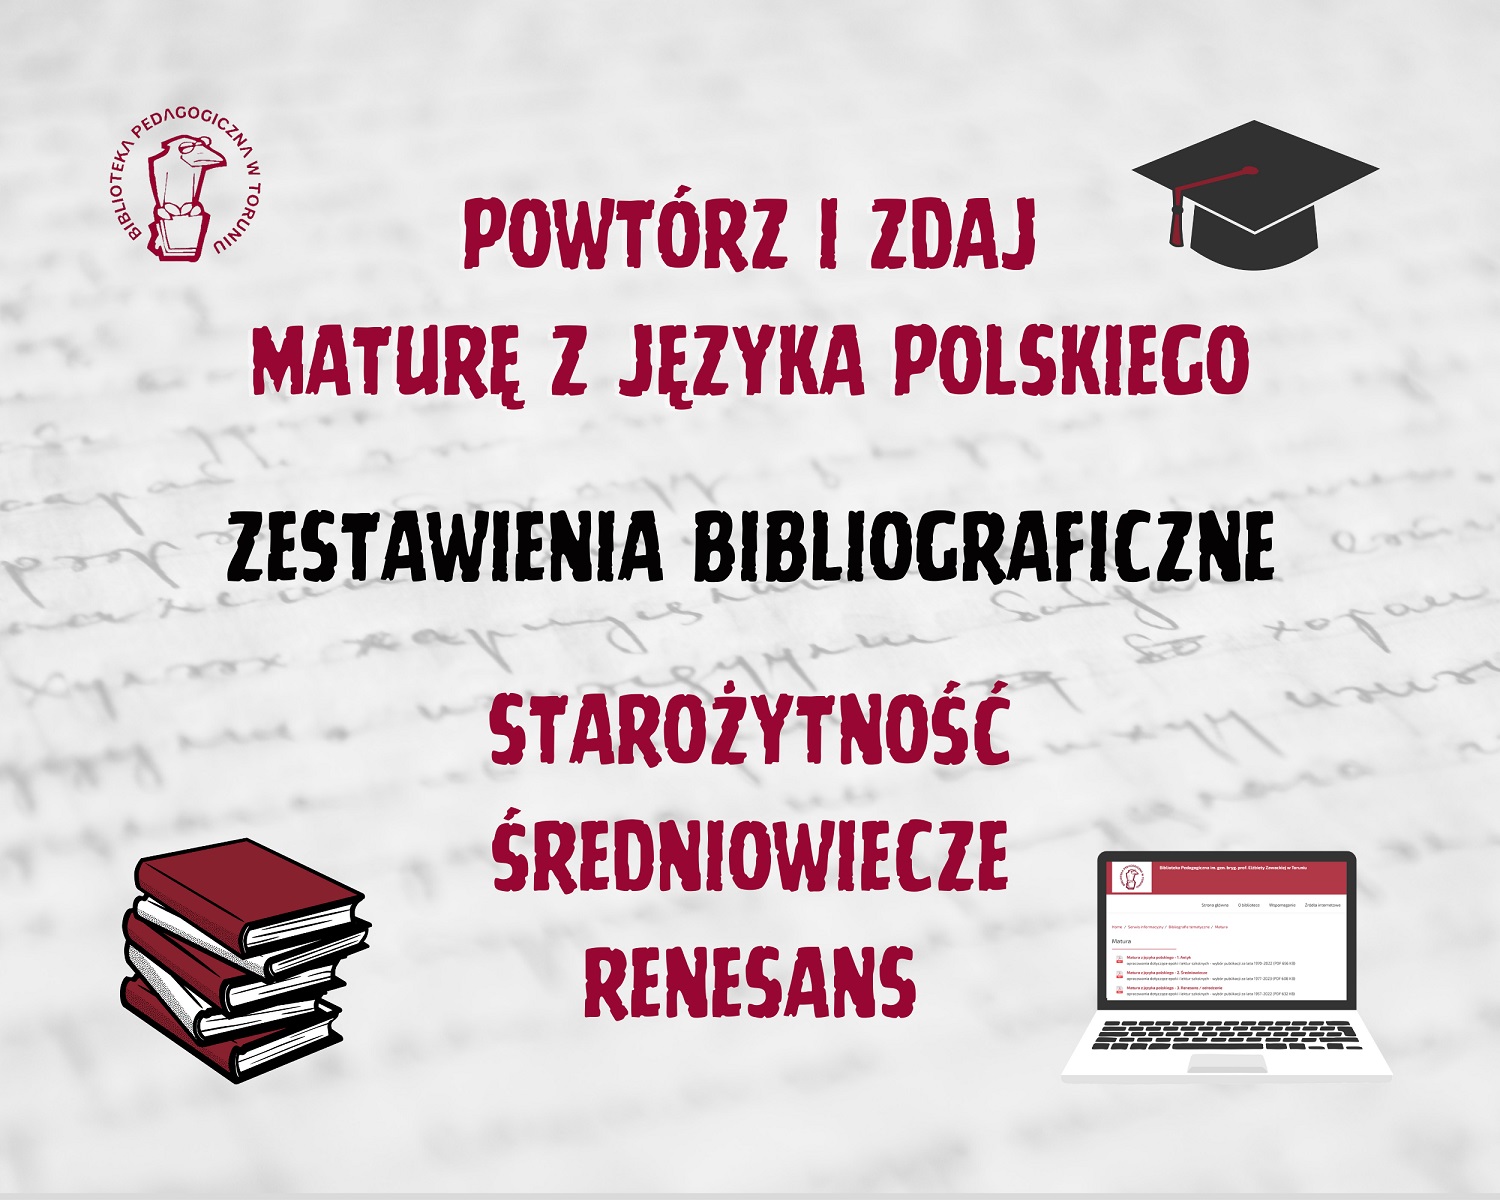 Powtórz i zdaja maturę z języka polskiego - zestawienia bibliograficzne: starożytność, oświecenie, renesans.